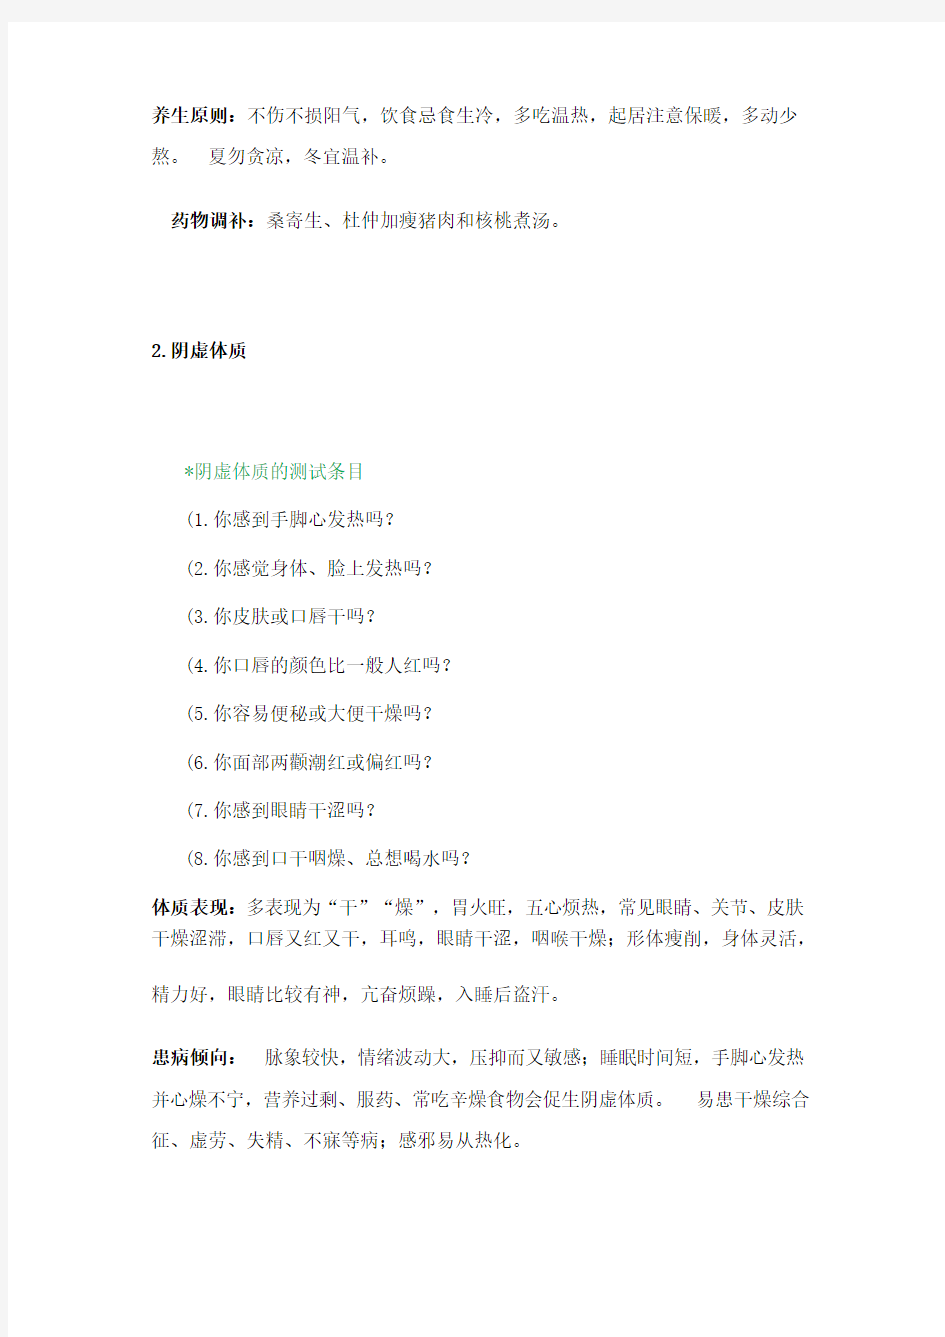 中国人体质的九种类型